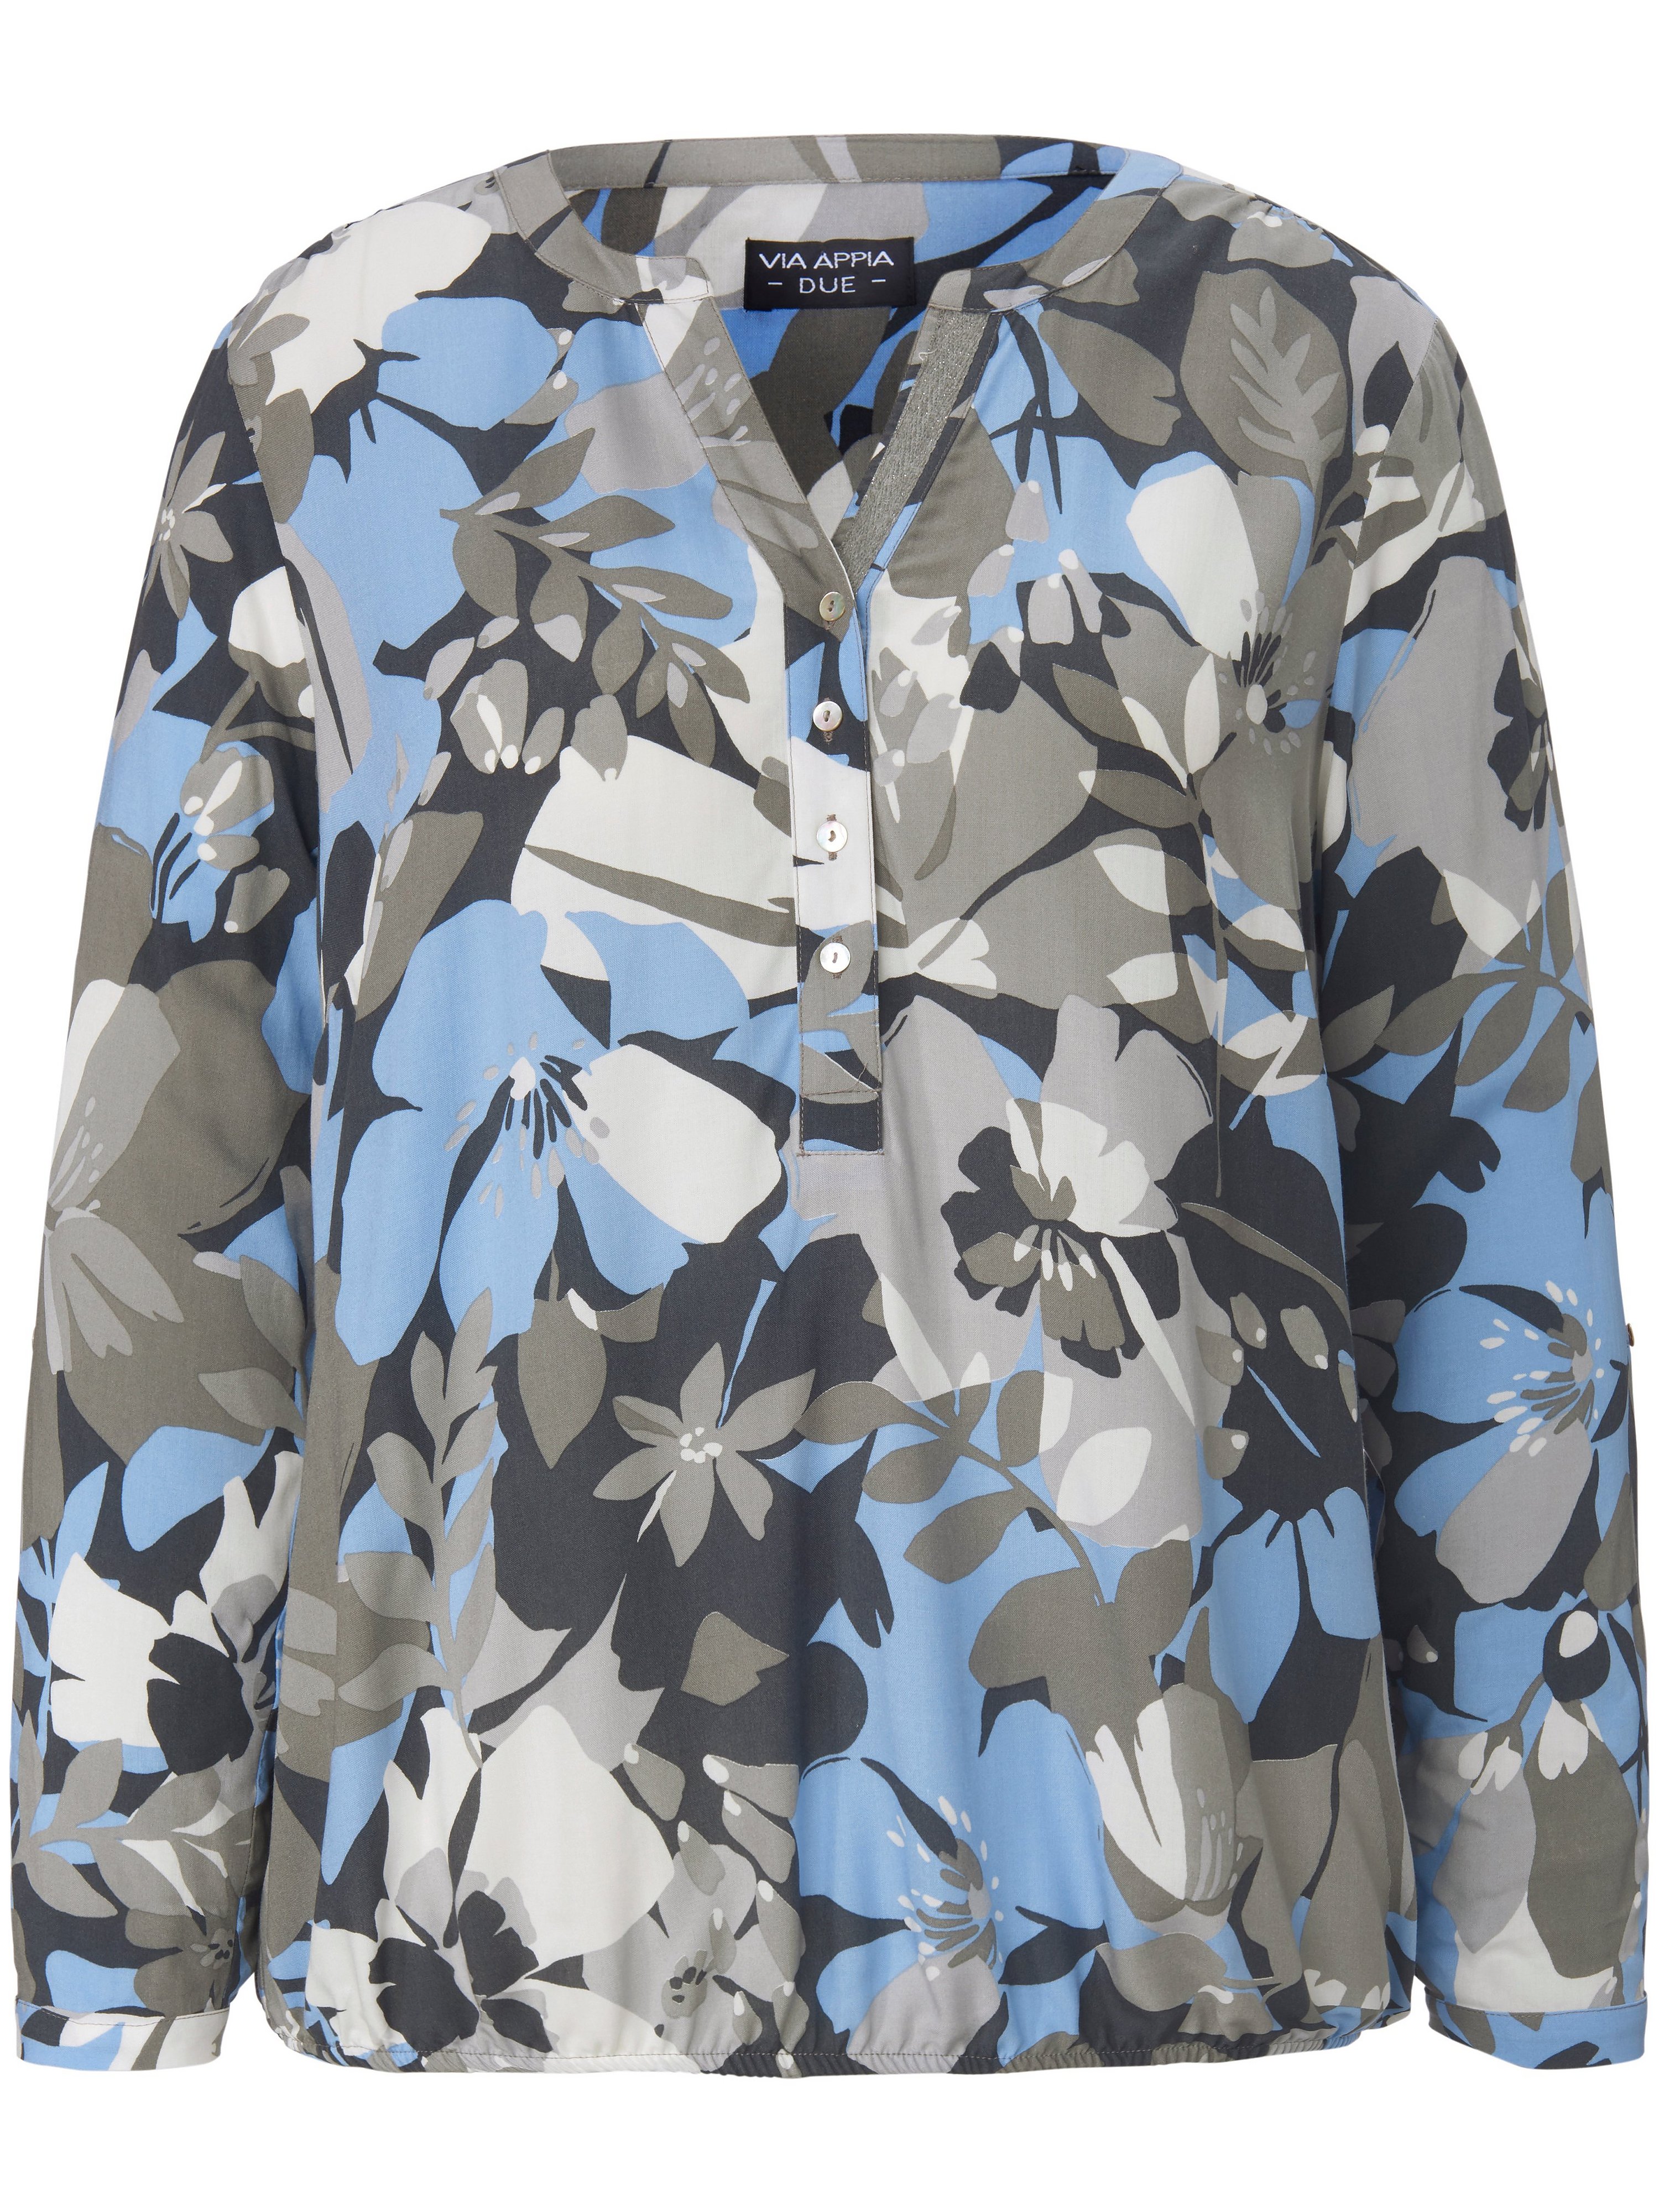 La blouse ample et fluide avec imprimé floral  Via Appia Due gris